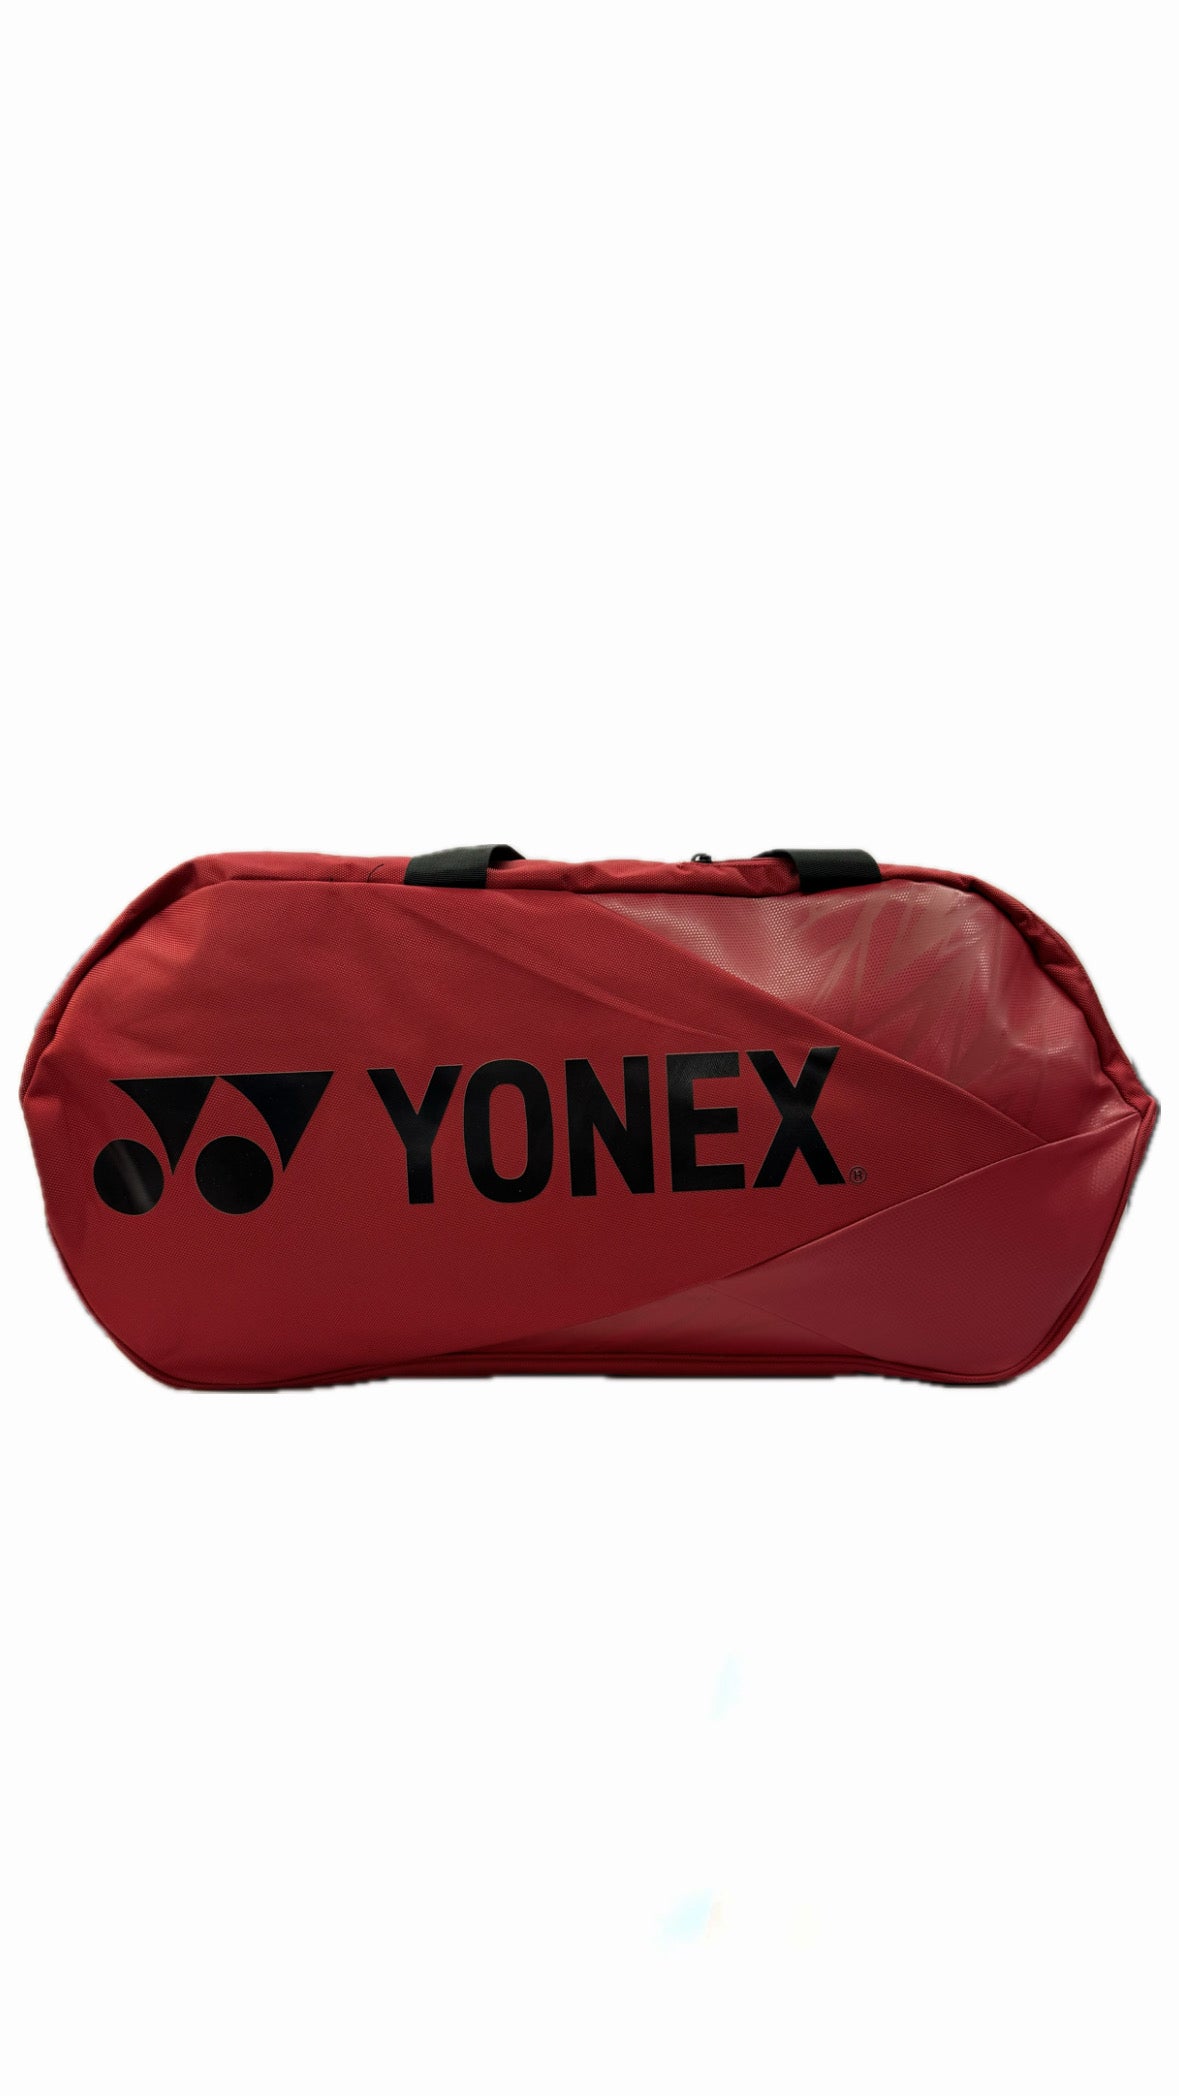 YONEX TOURNAMENT BAG